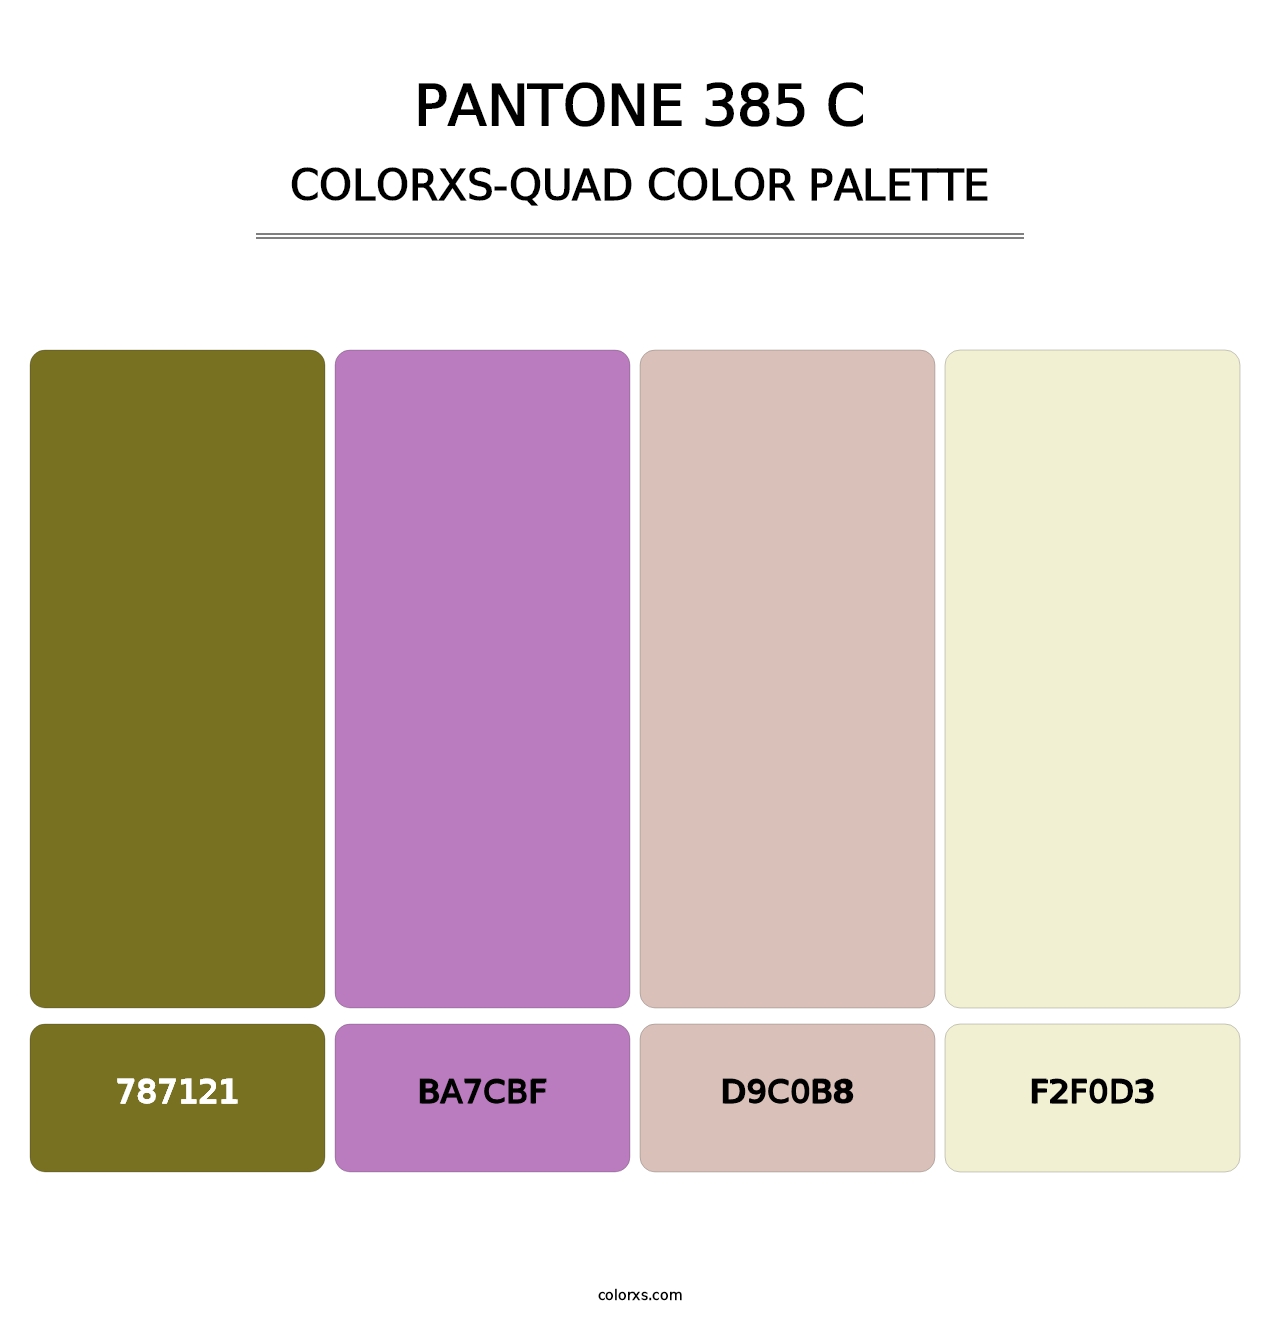 PANTONE 385 C - Colorxs Quad Palette